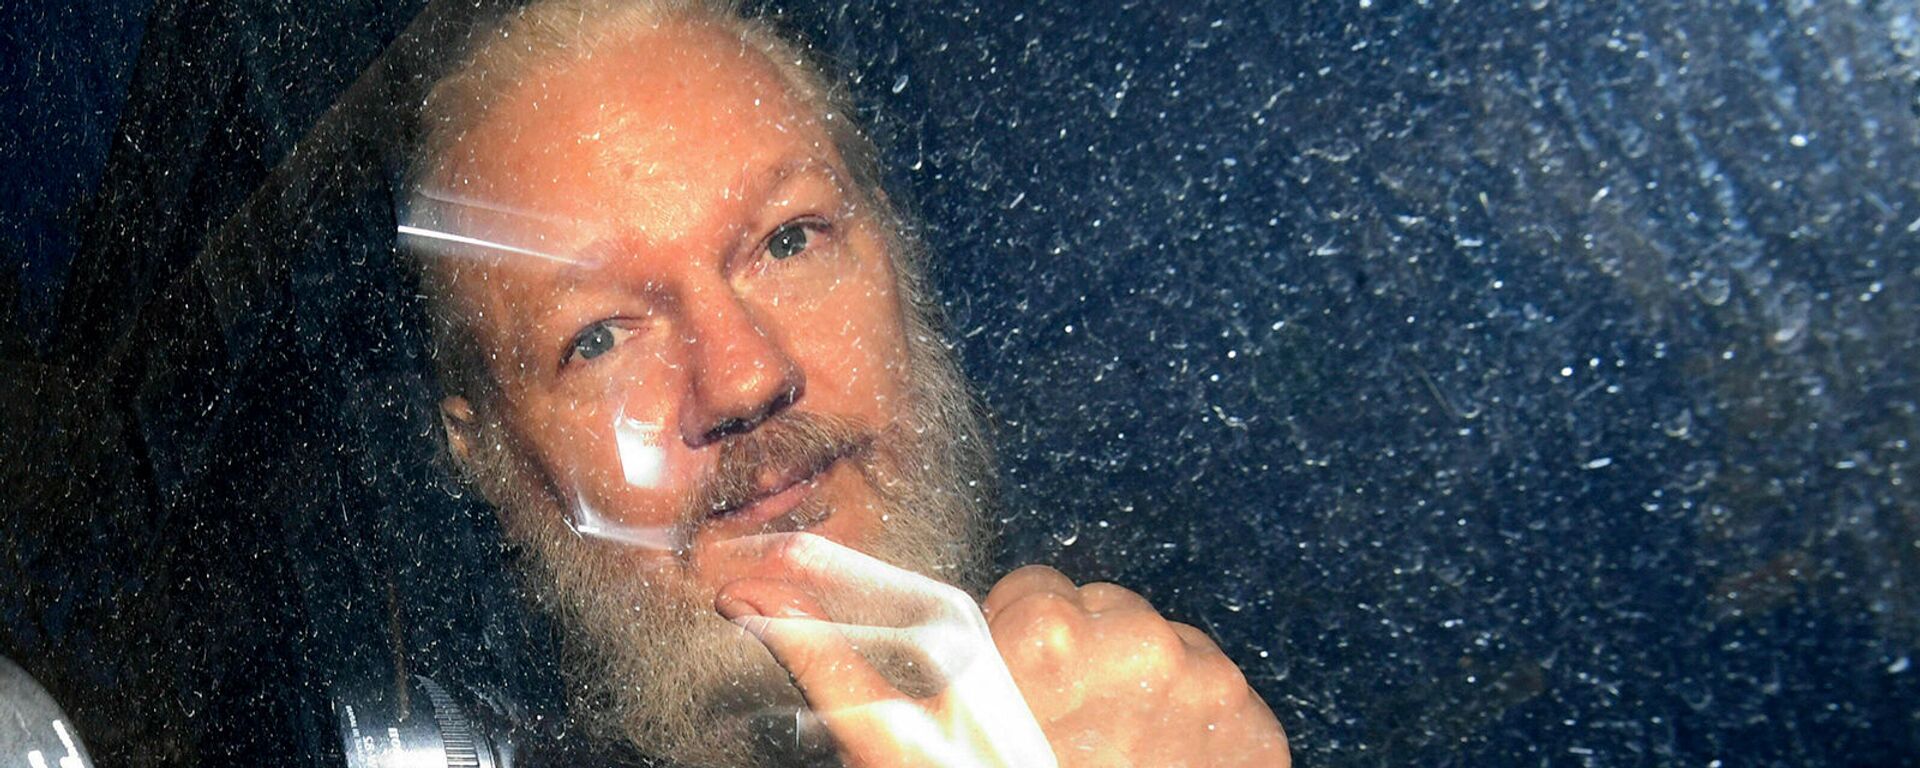 Основатель WikiLeaks Джулиан Ассанж в полицейском автомобиле (11 апреля 2019). Лондон - Sputnik Молдова, 1920, 27.09.2019